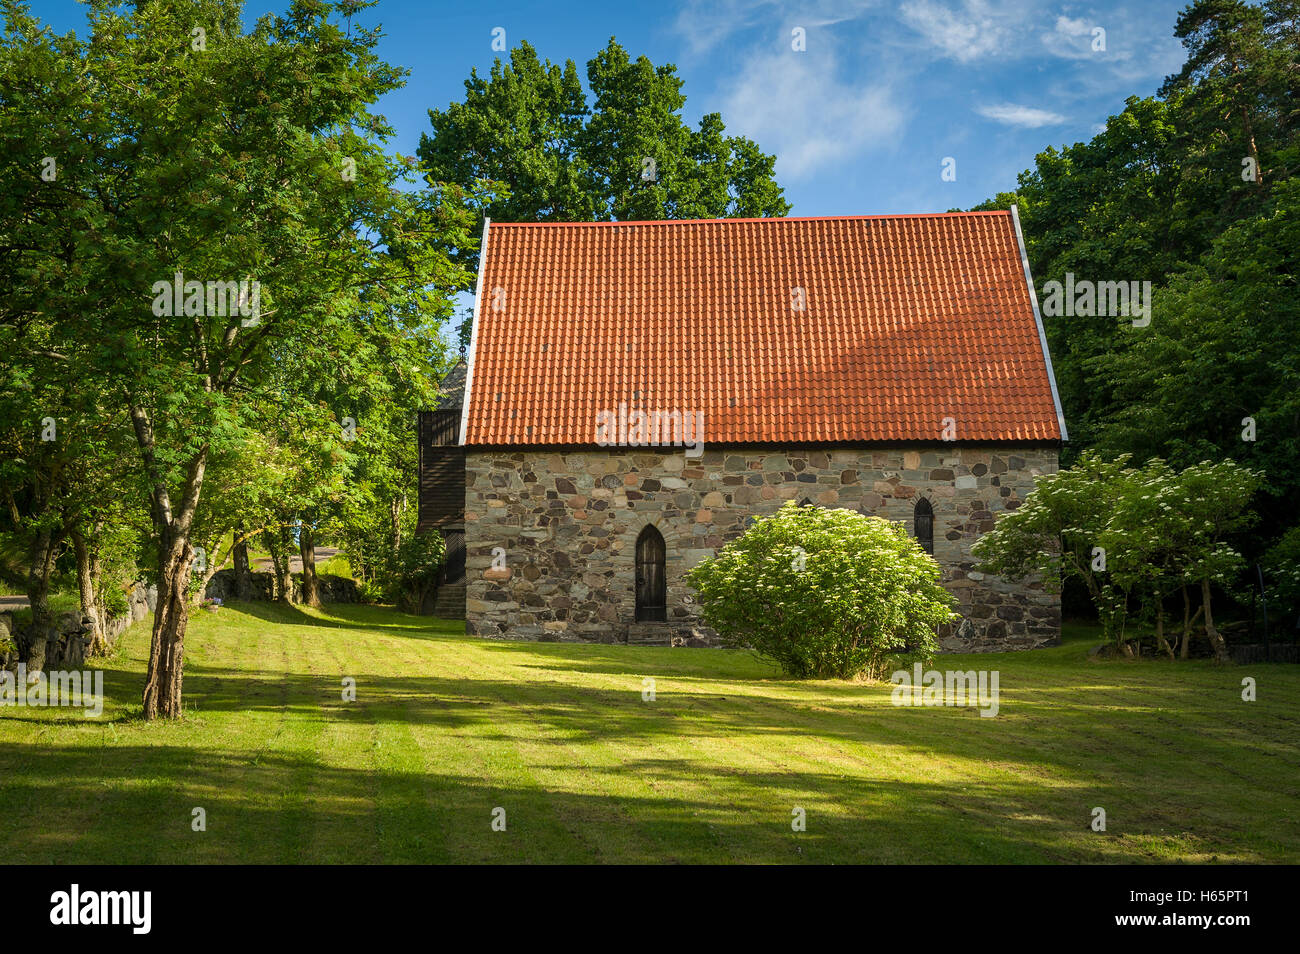 Lovoy kapell - cappella medievale sulla molla del sito di acqua Foto Stock